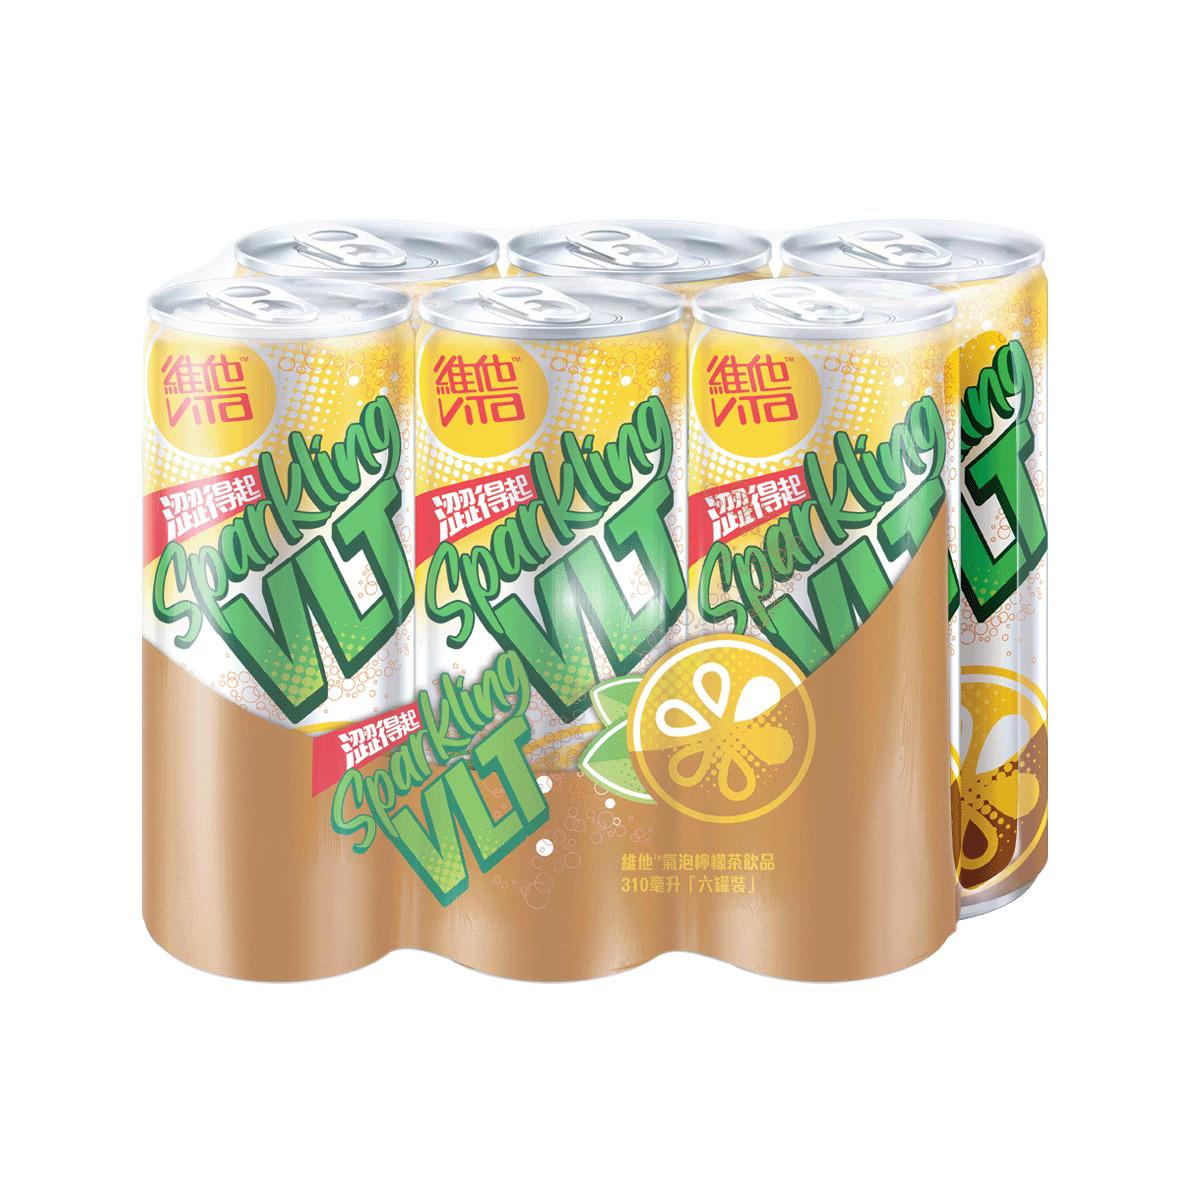 vita-sparkling-lemon-tea-drink